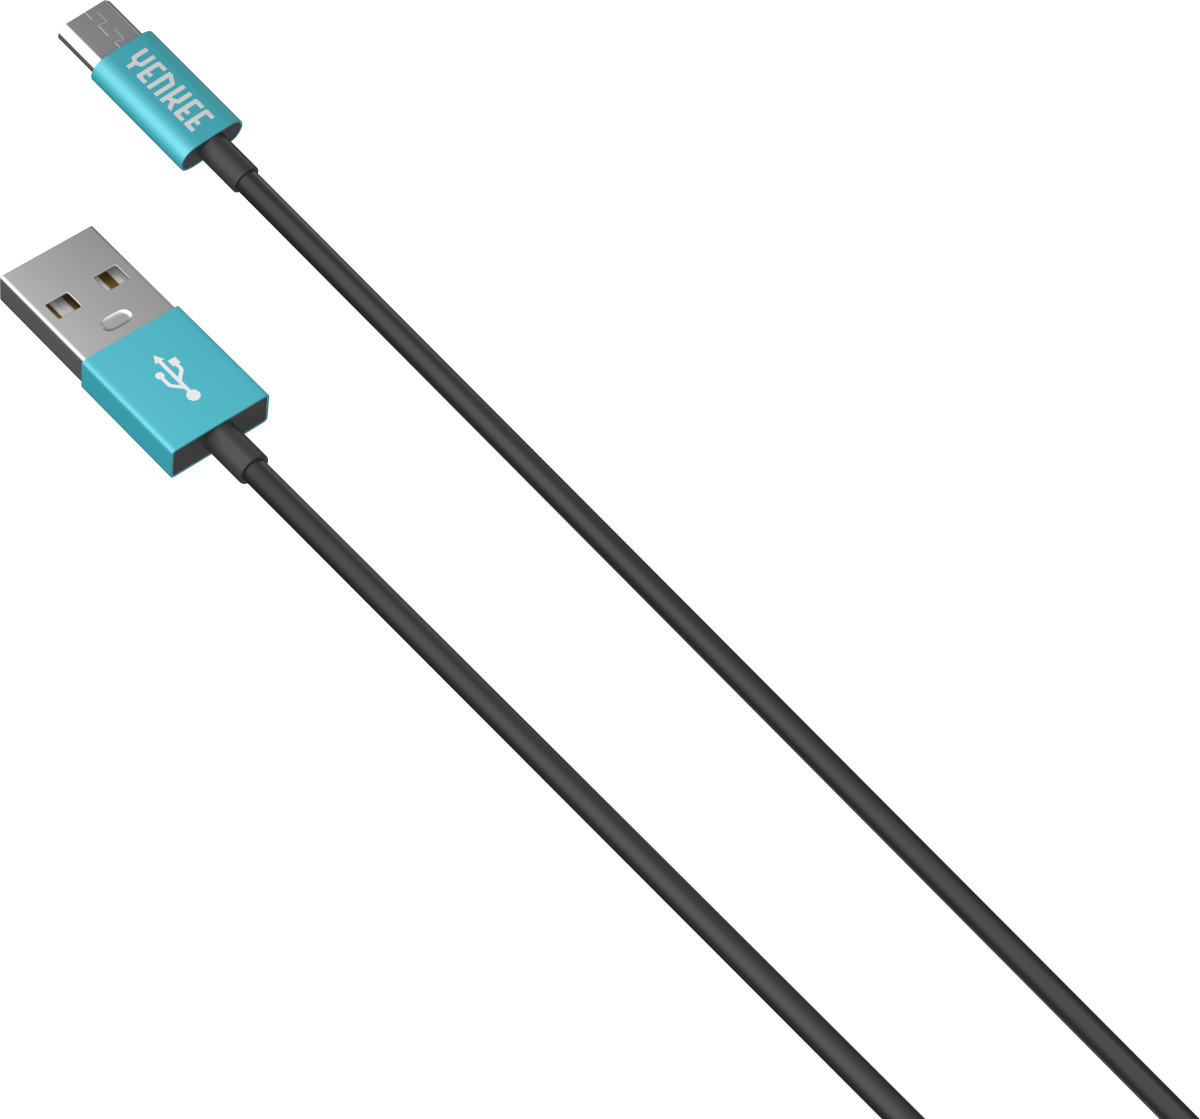 Synchronizační a nabíjecí kabel USB 1 m